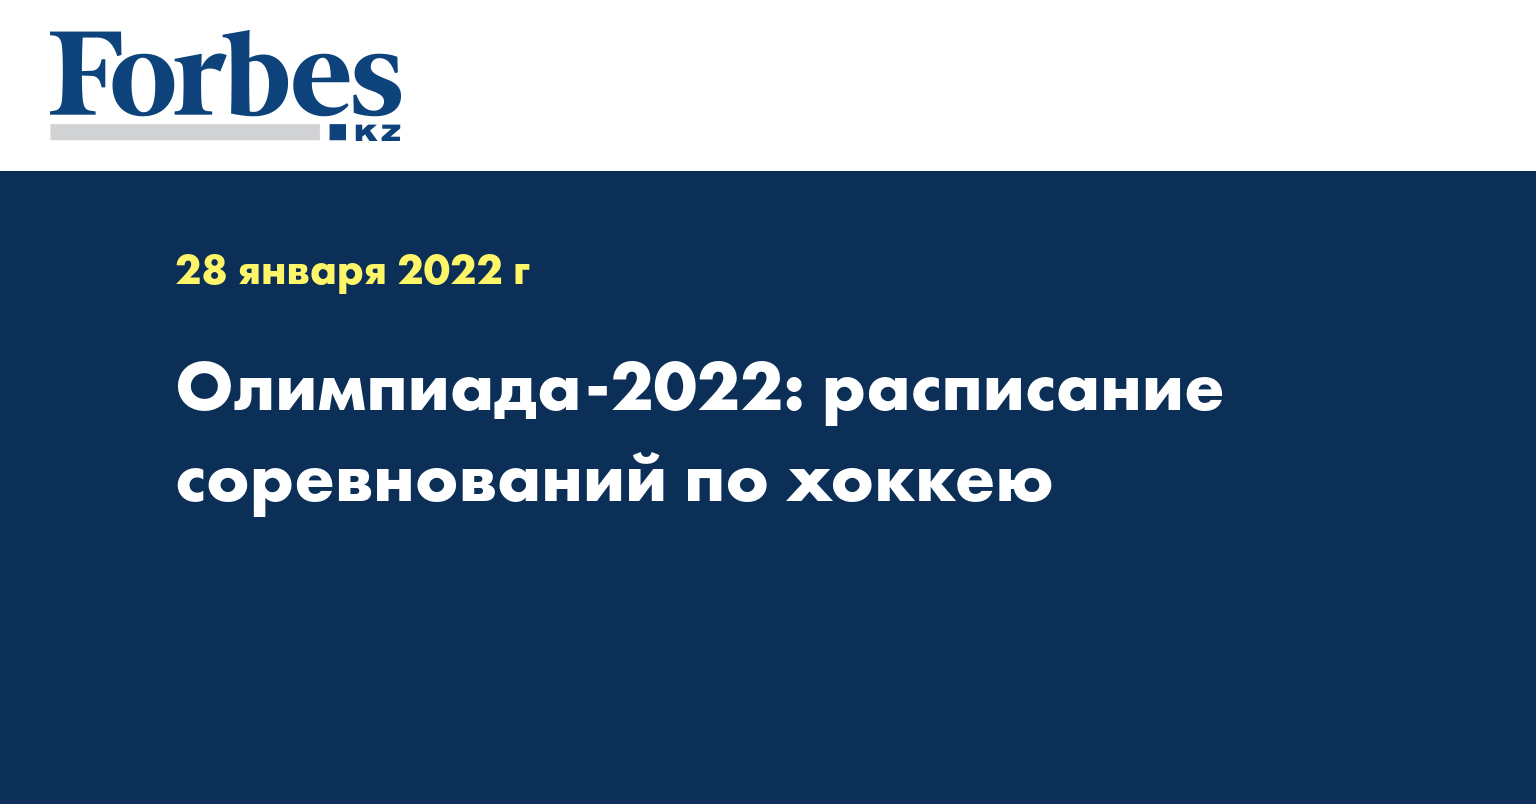 Олимпиада-2022: расписание соревнований по хоккею